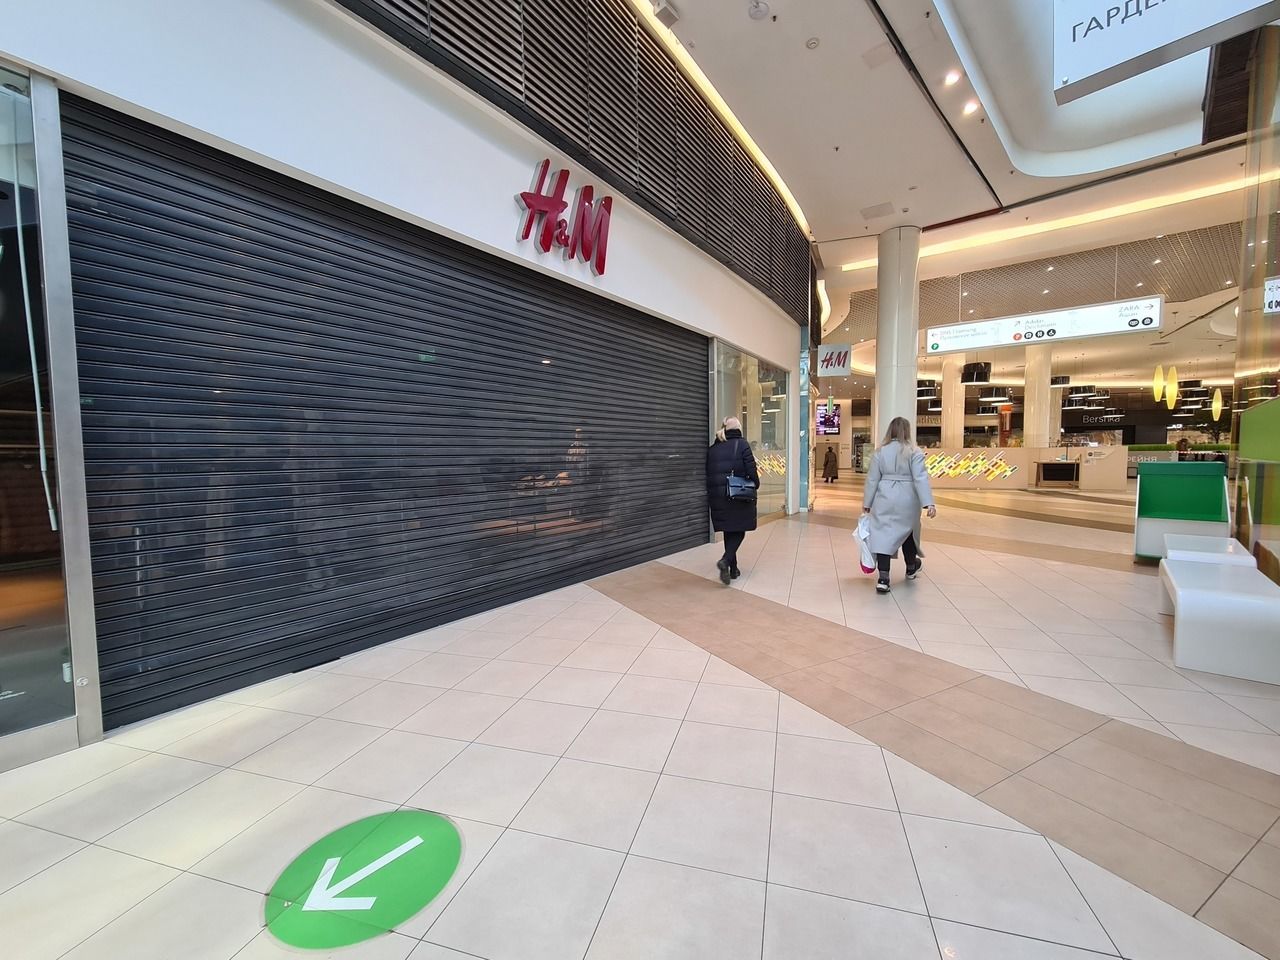 Галерея» опустела: в торговом центре закрылись магазины западных брендов